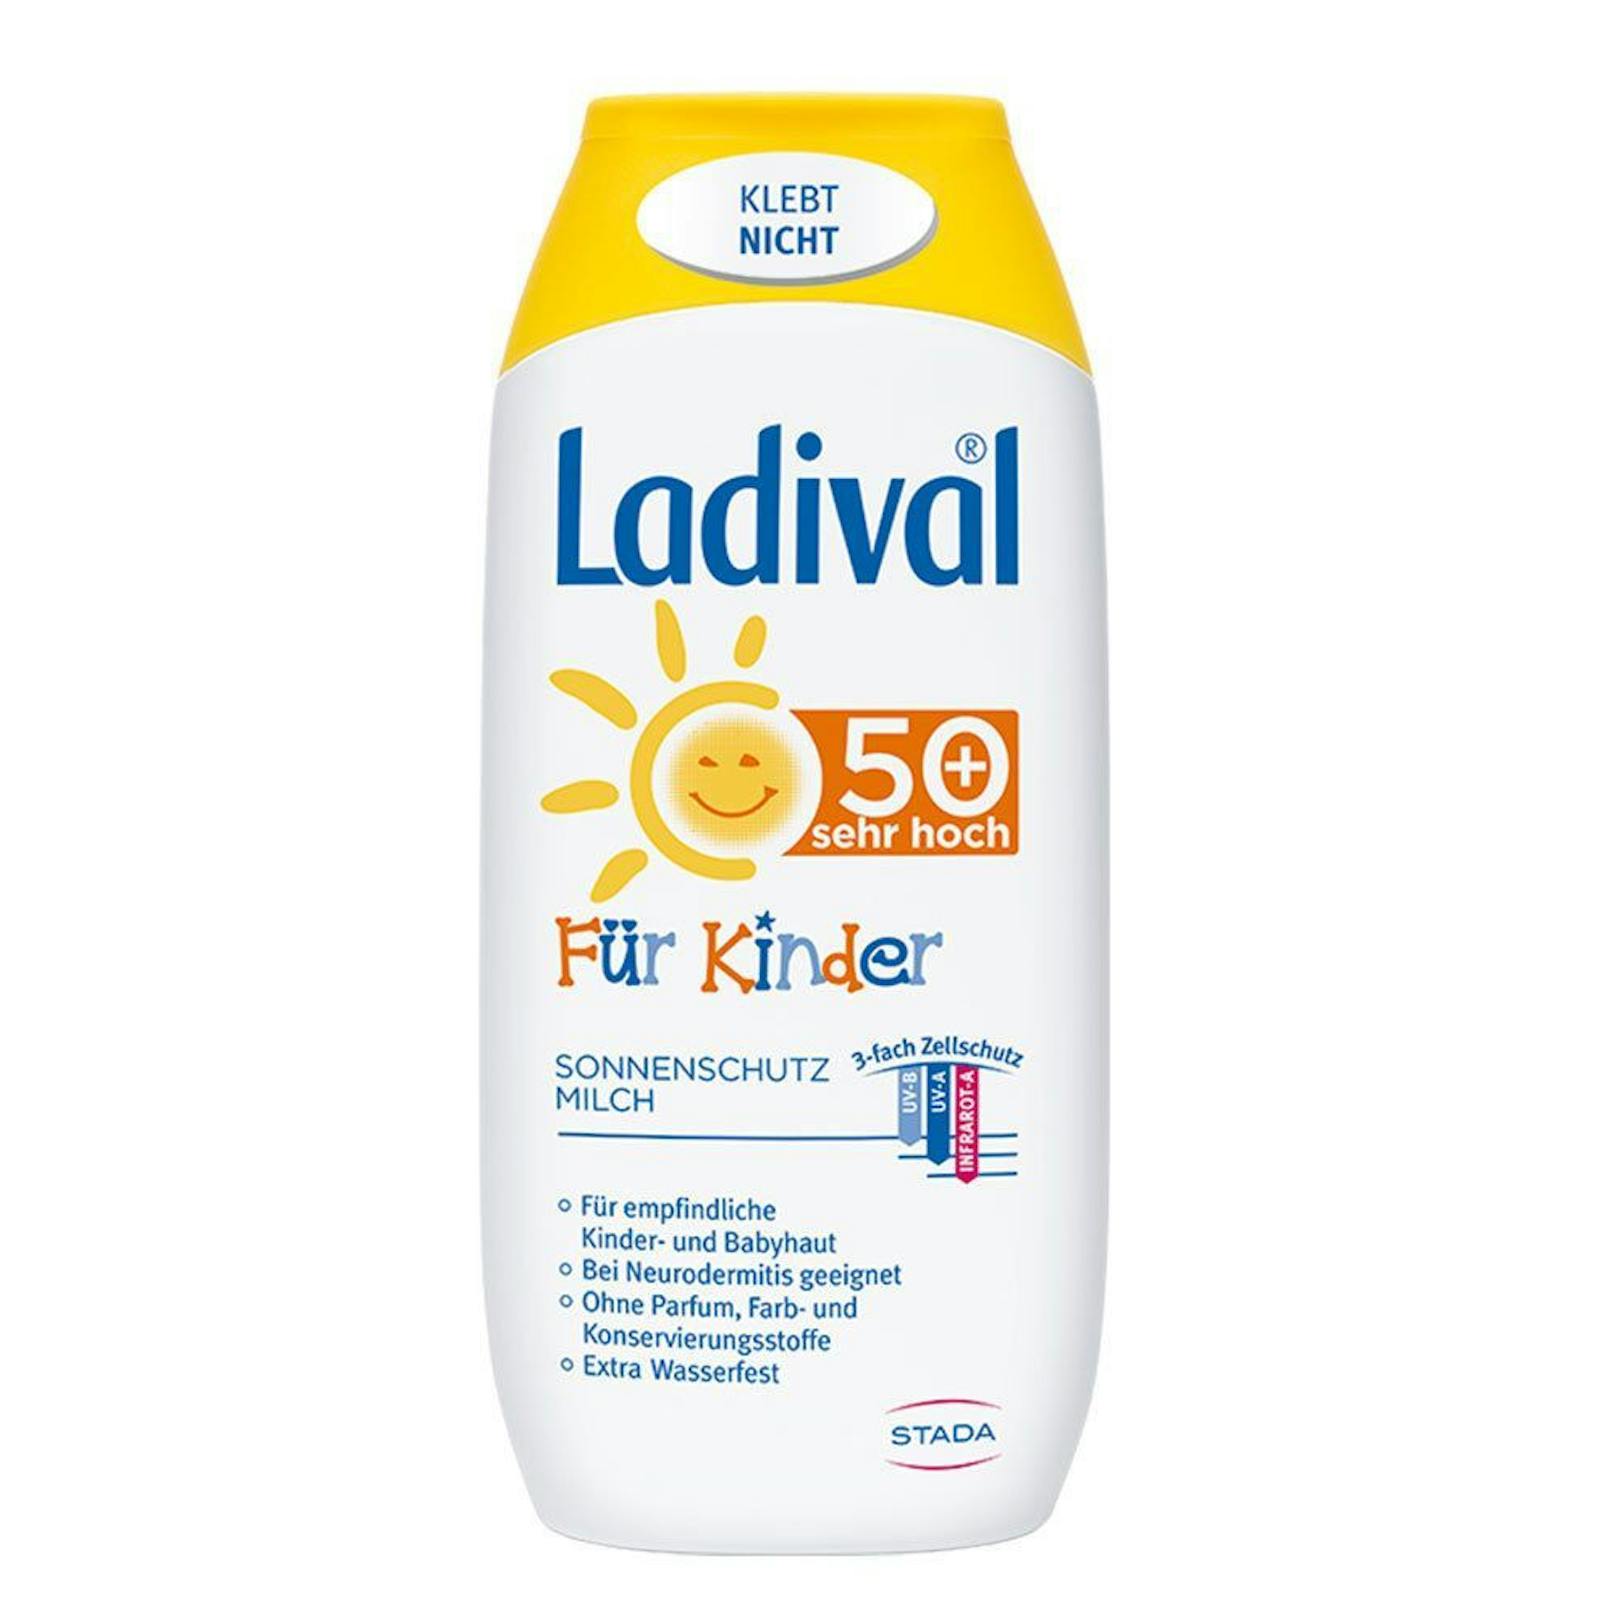 Die Ladival Sonnenschutzmilch für Kinder ist nur in der Apotheke erhältlich.&nbsp;